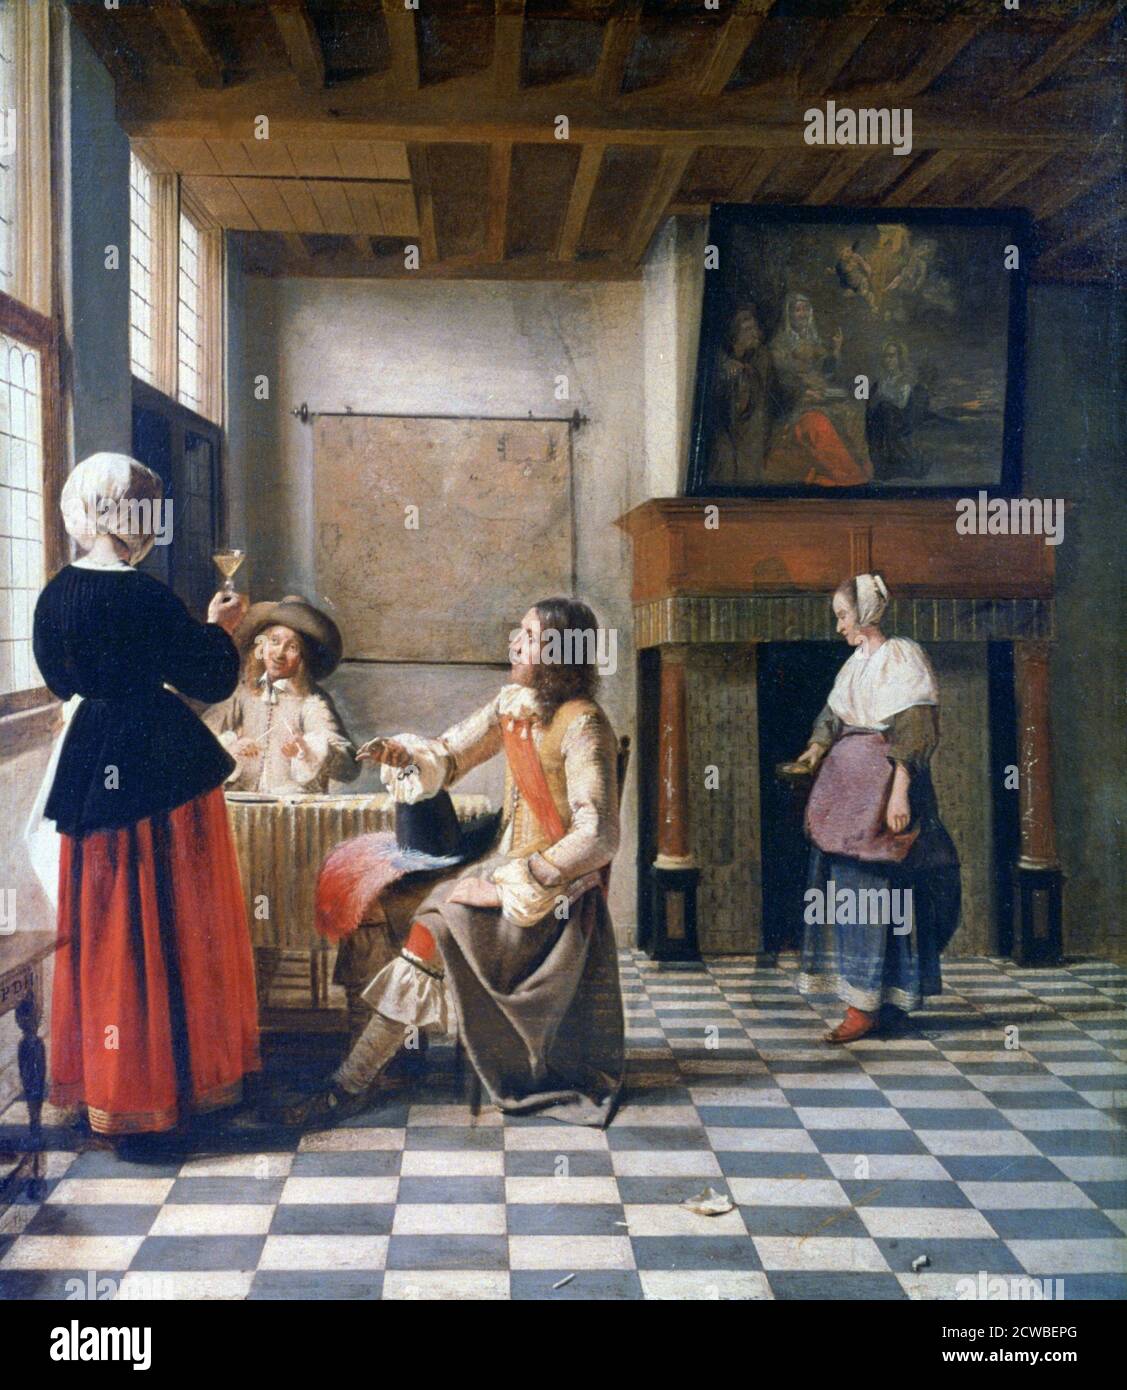 Interior, Frau trinkt mit zwei Männern und einer Magd', c1658 Künstler: Pieter de Hooch. Pieter de Hooch (1629-1684) war ein niederländischer Maler des Goldenen Zeitalters, der für seine Genrewerke ruhiger häuslicher Szenen berühmt war. Stockfoto